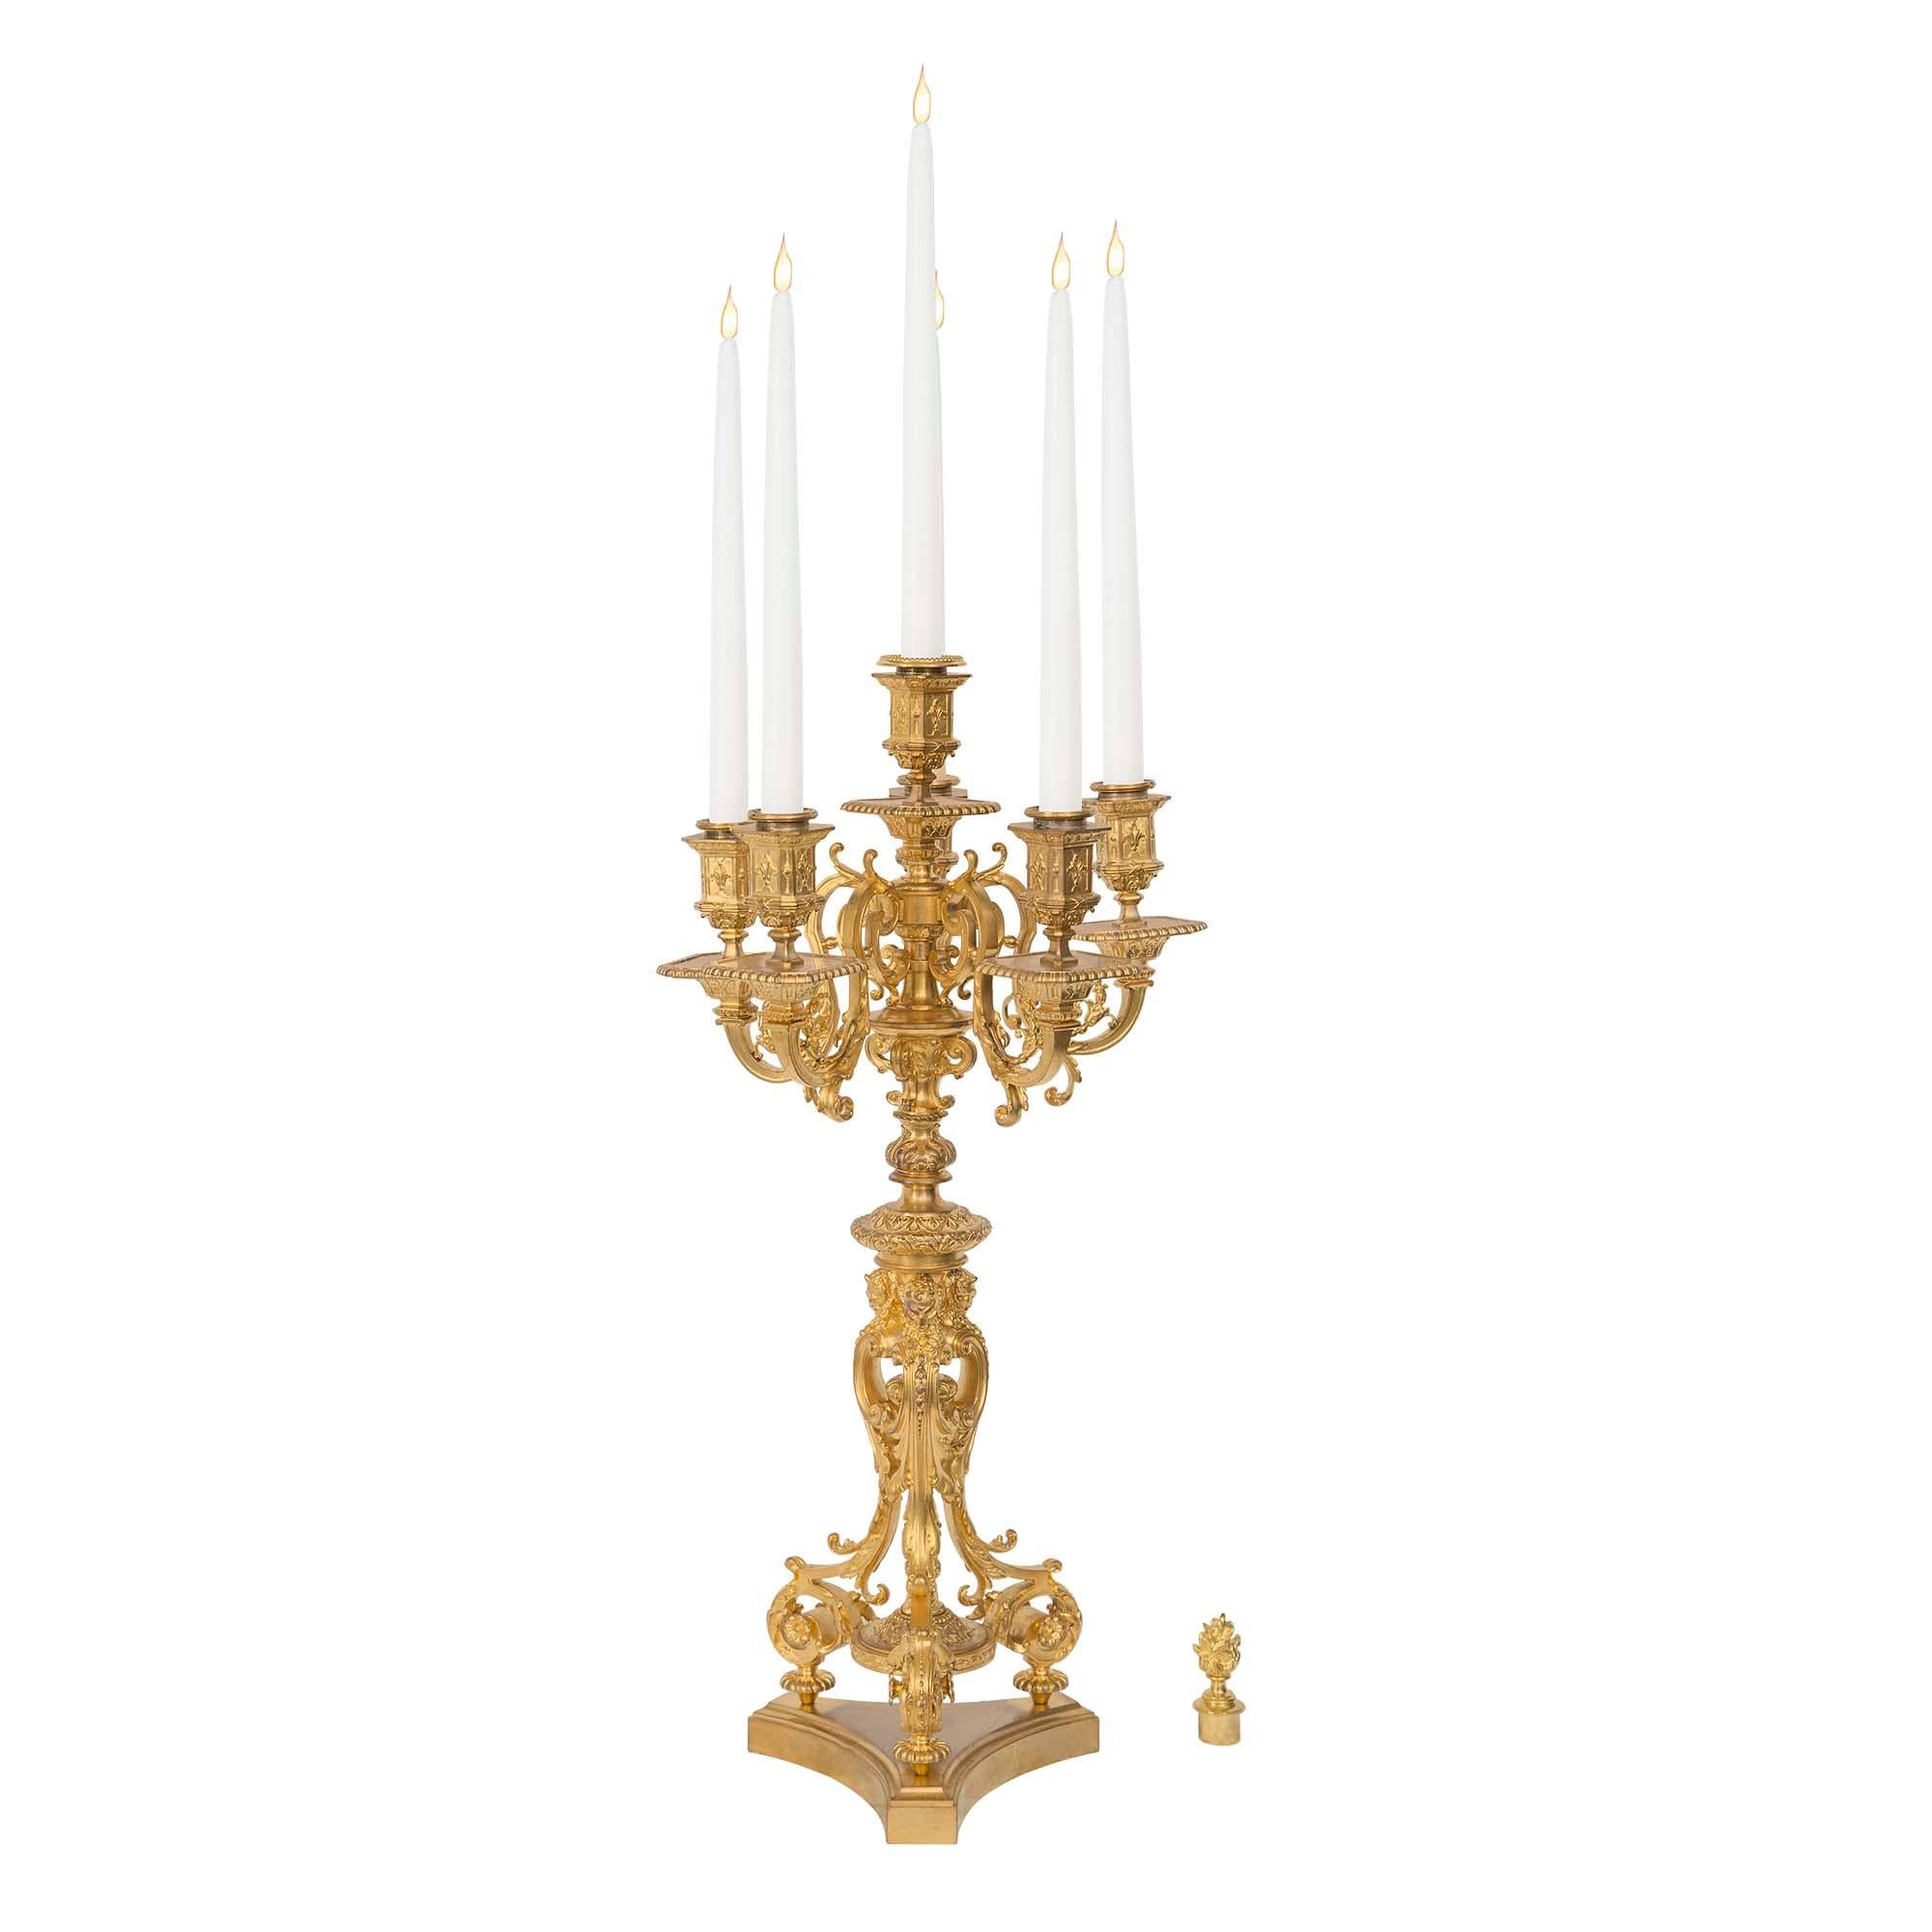 Une paire de candélabres à six bras de lumière en bronze doré de la Renaissance du 19ème siècle signée F. Barbedienne. Chaque candélabre est surélevé par une base triangulaire aux côtés concaves et au bord mouluré. Au-dessus, trois pieds en forme de